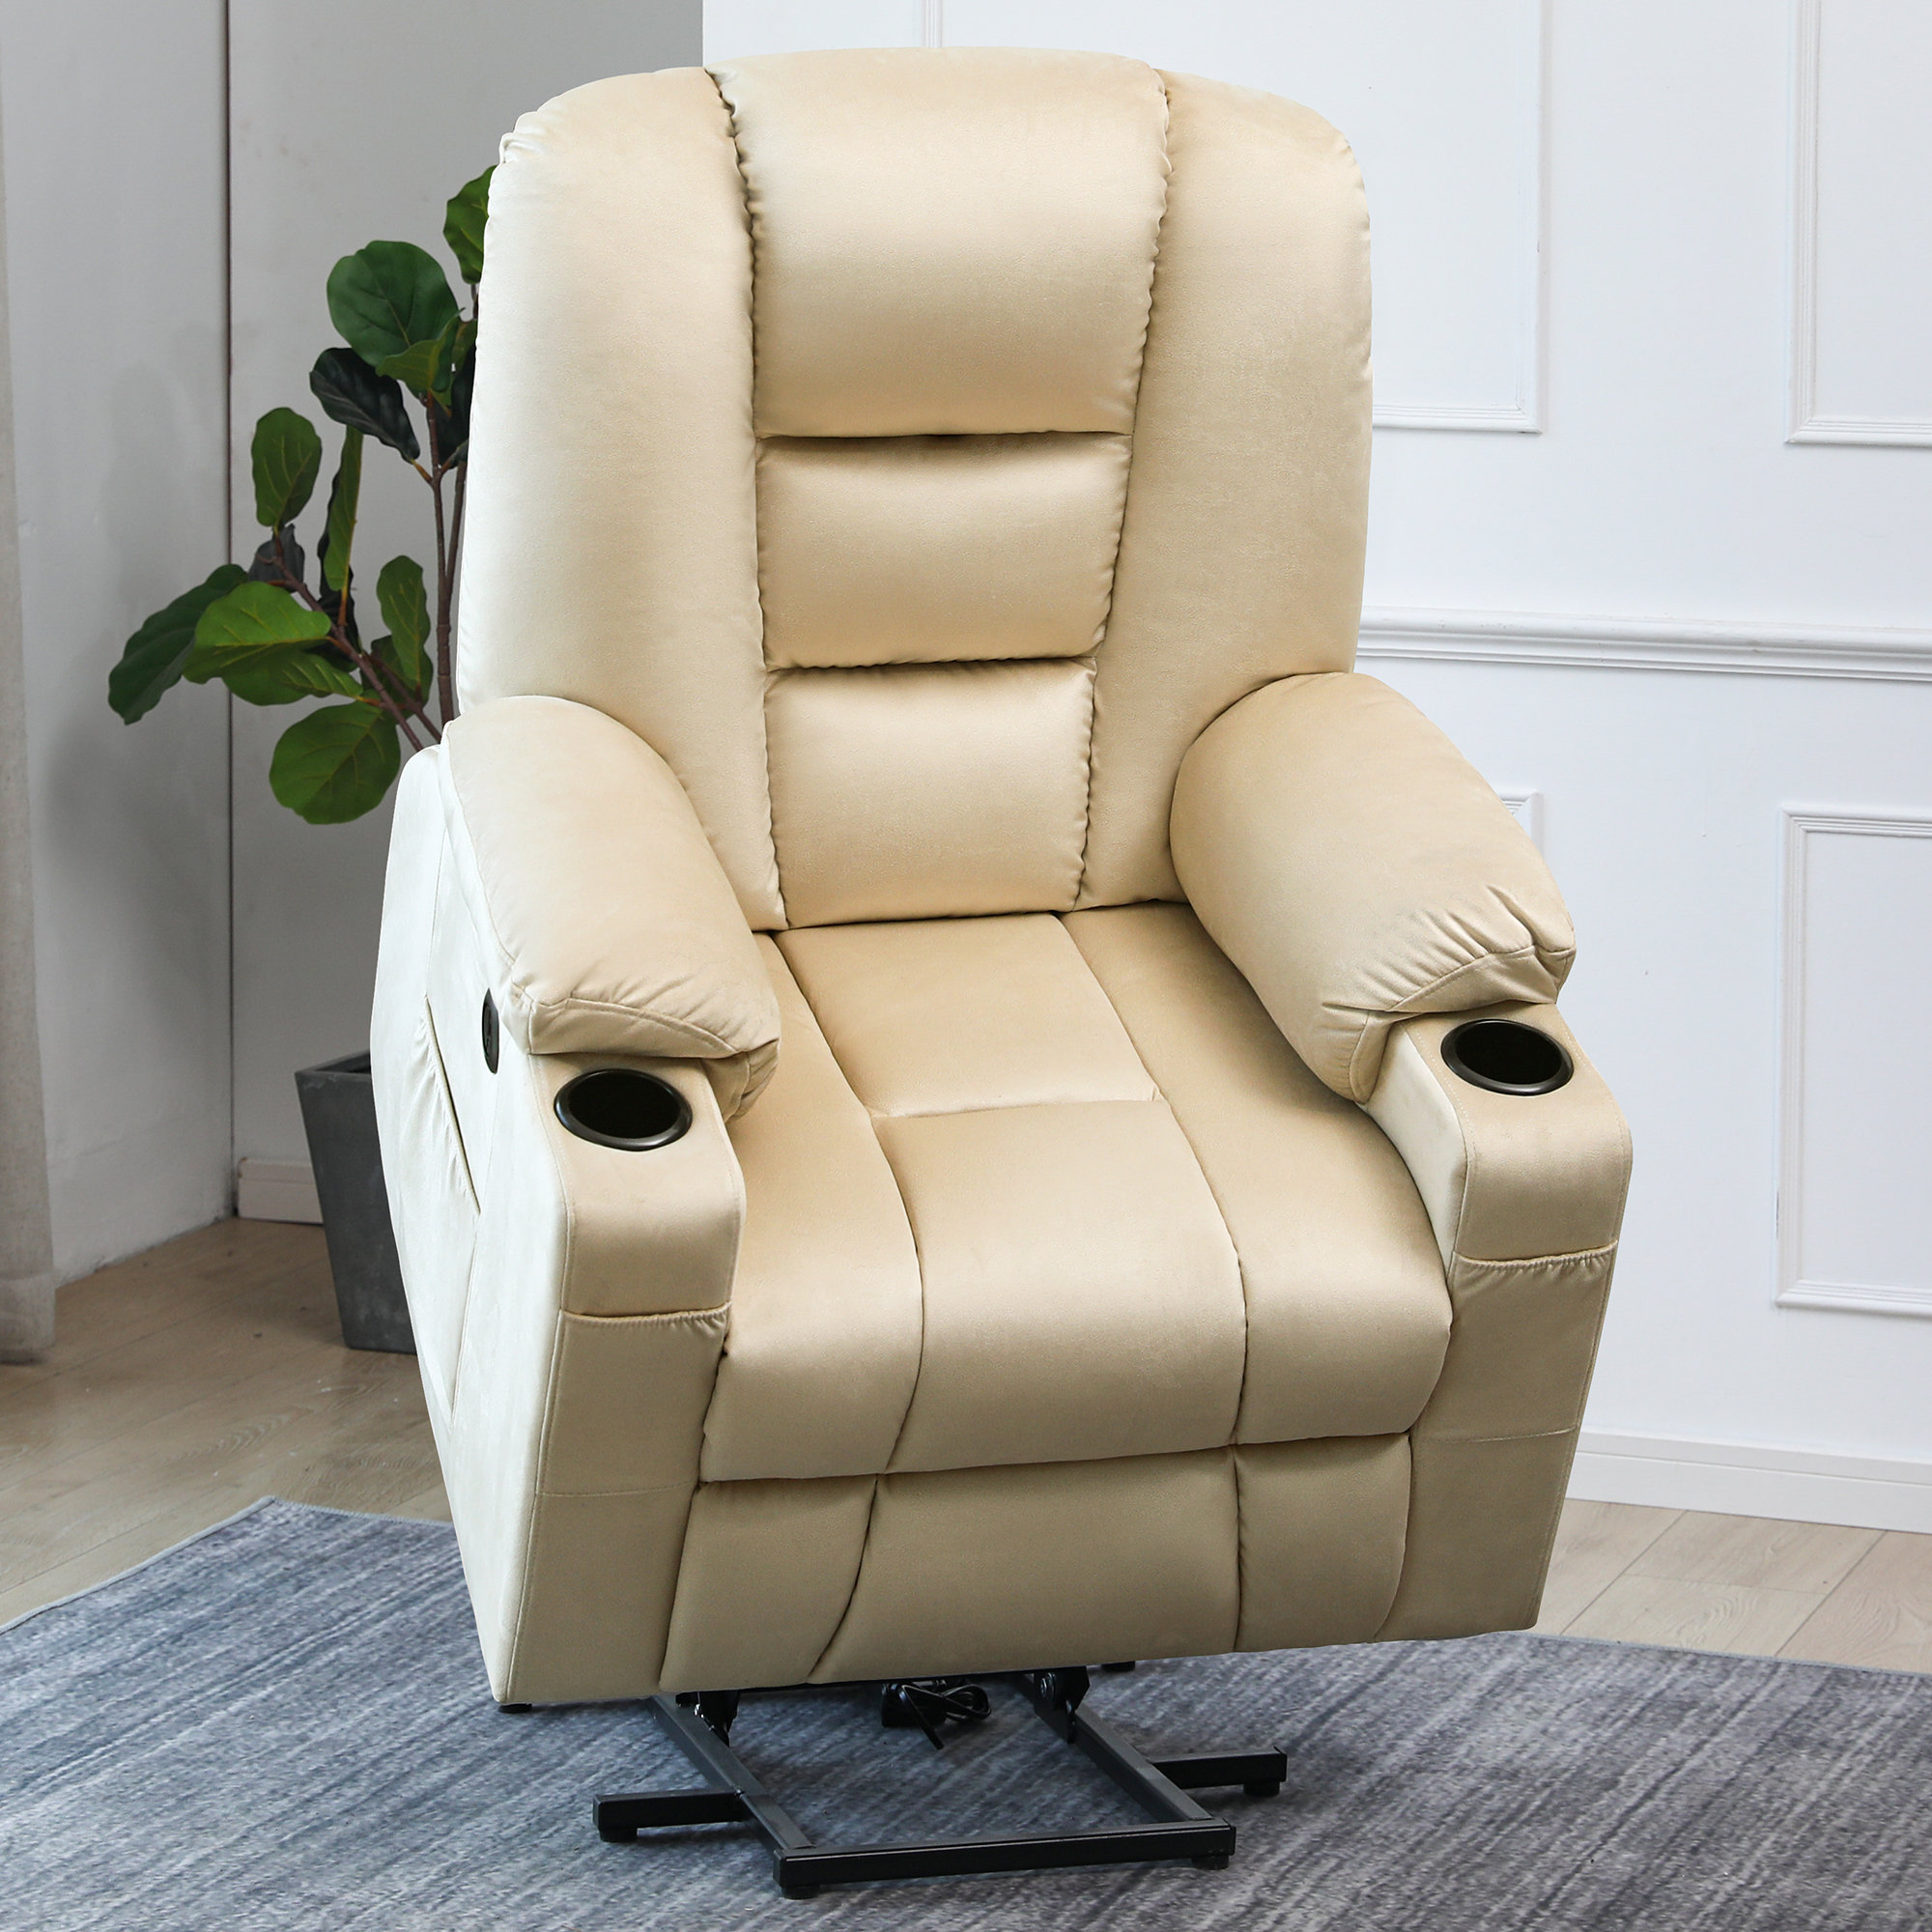 https://assets.wfcdn.com/im/29854253/compr-r85/2029/202995790/36-wide-power-lift-chair-recliner-with-massager-upholstered.jpg